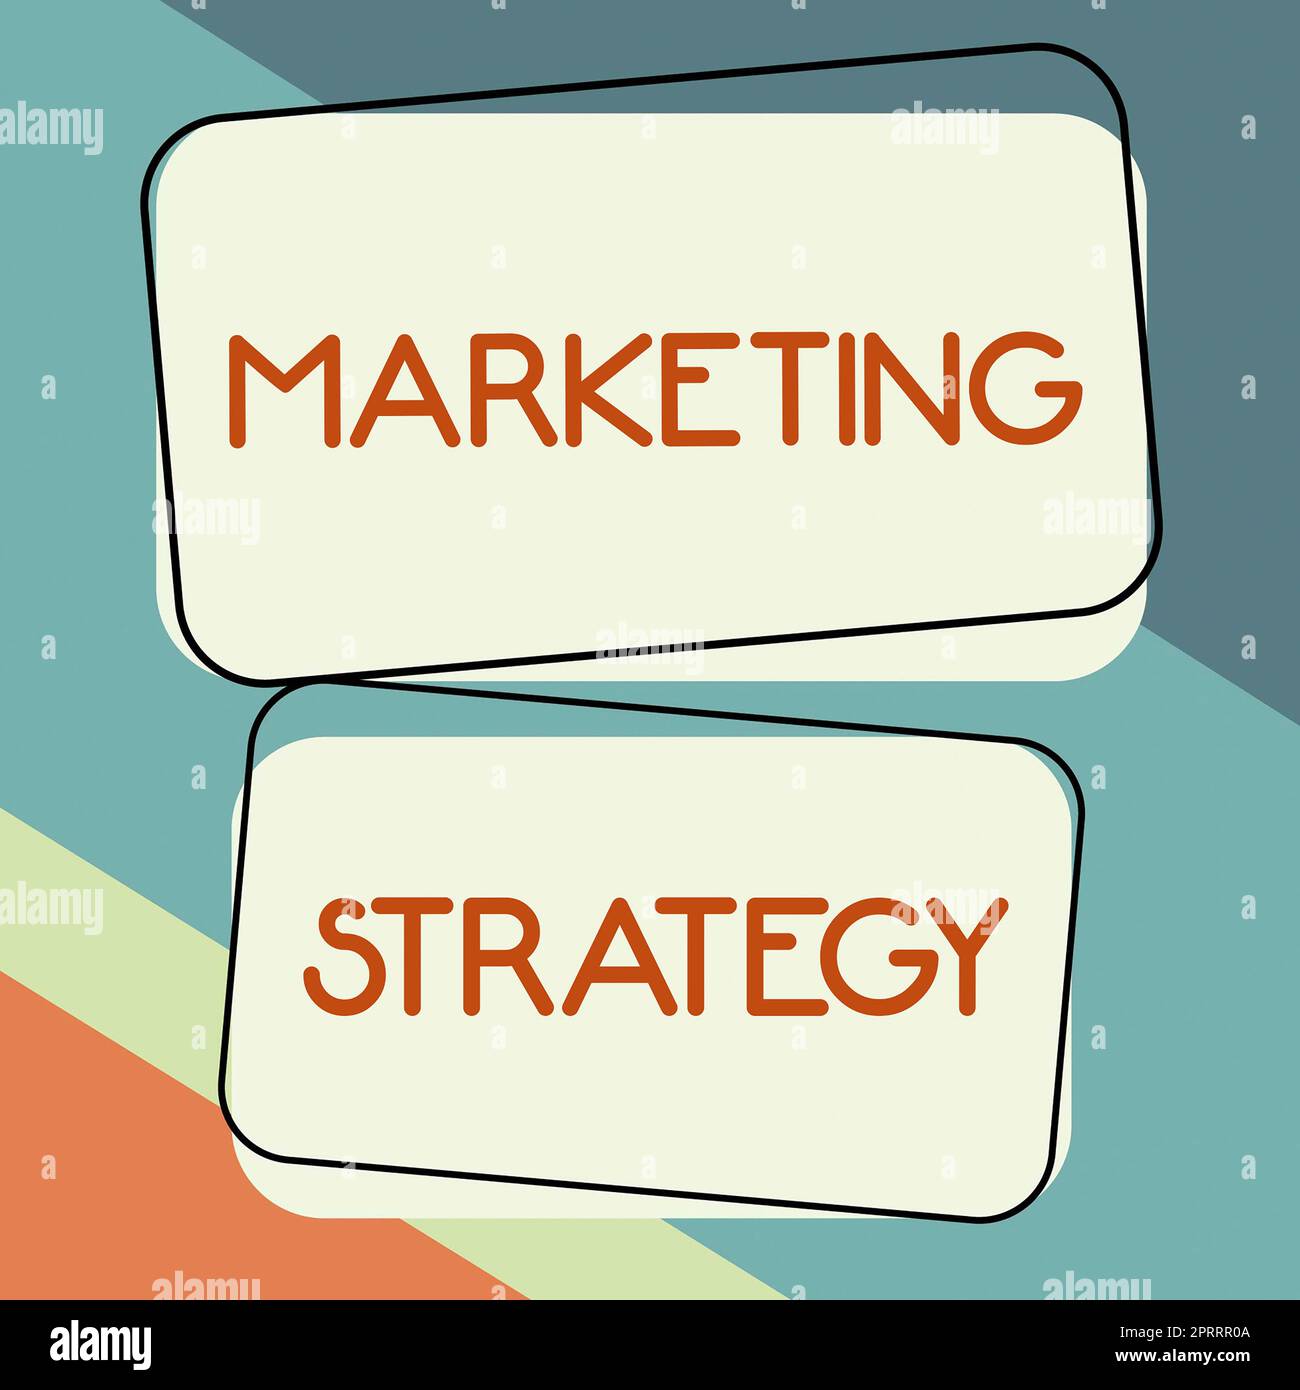 Affiche textuelle montrant StrategyScheme de marketing sur la façon de mettre en place les produits Services Business. Schéma de présentation de l'entreprise sur la manière de présenter les activités de services de produits Banque D'Images